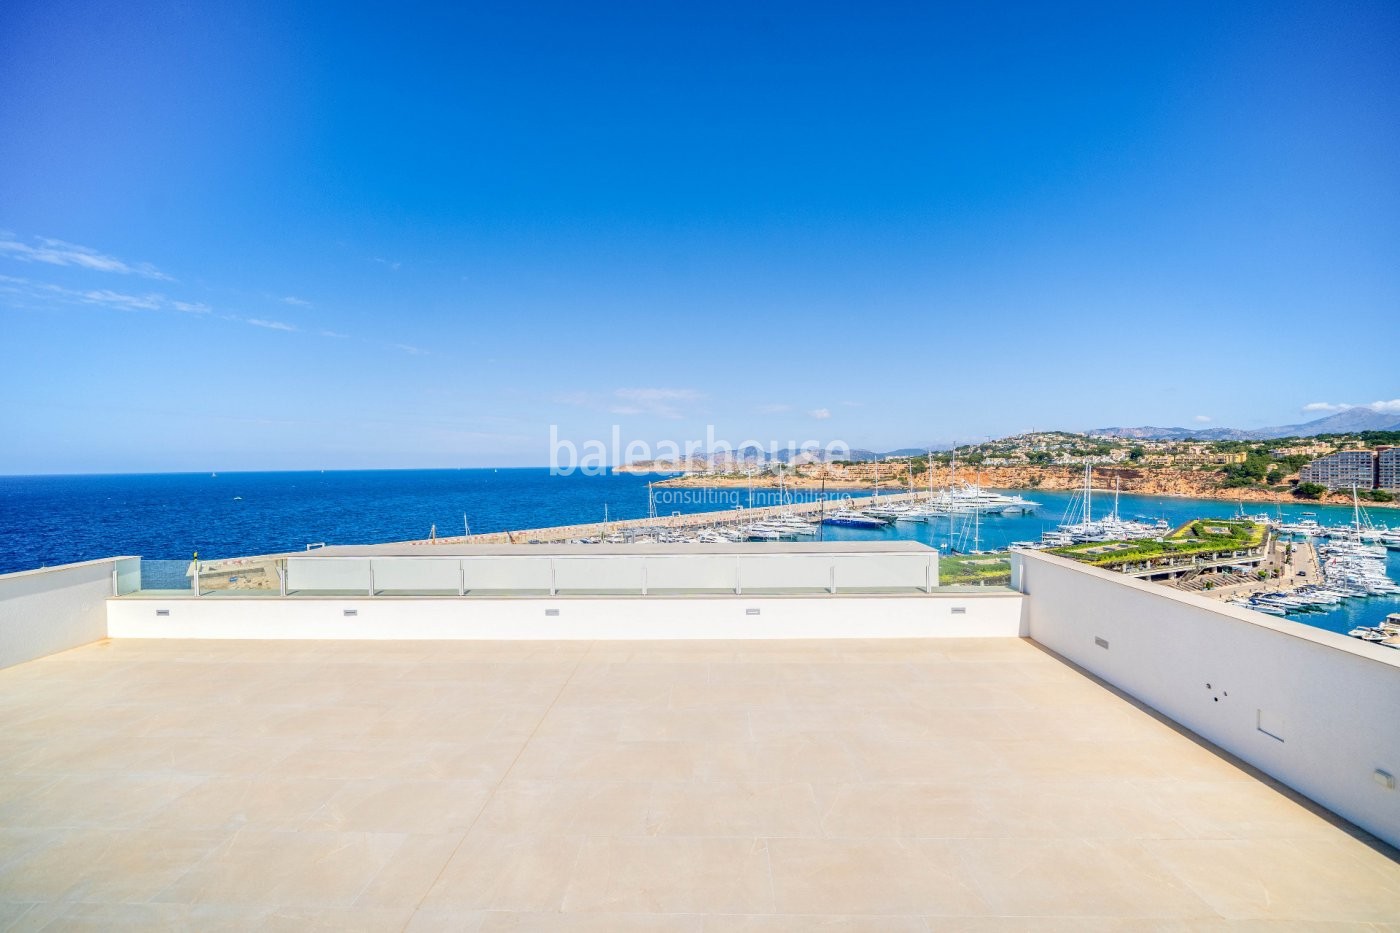 Sensationelle Neubauvilla als Aussichtspunkt über dem Meer in Port Adriano